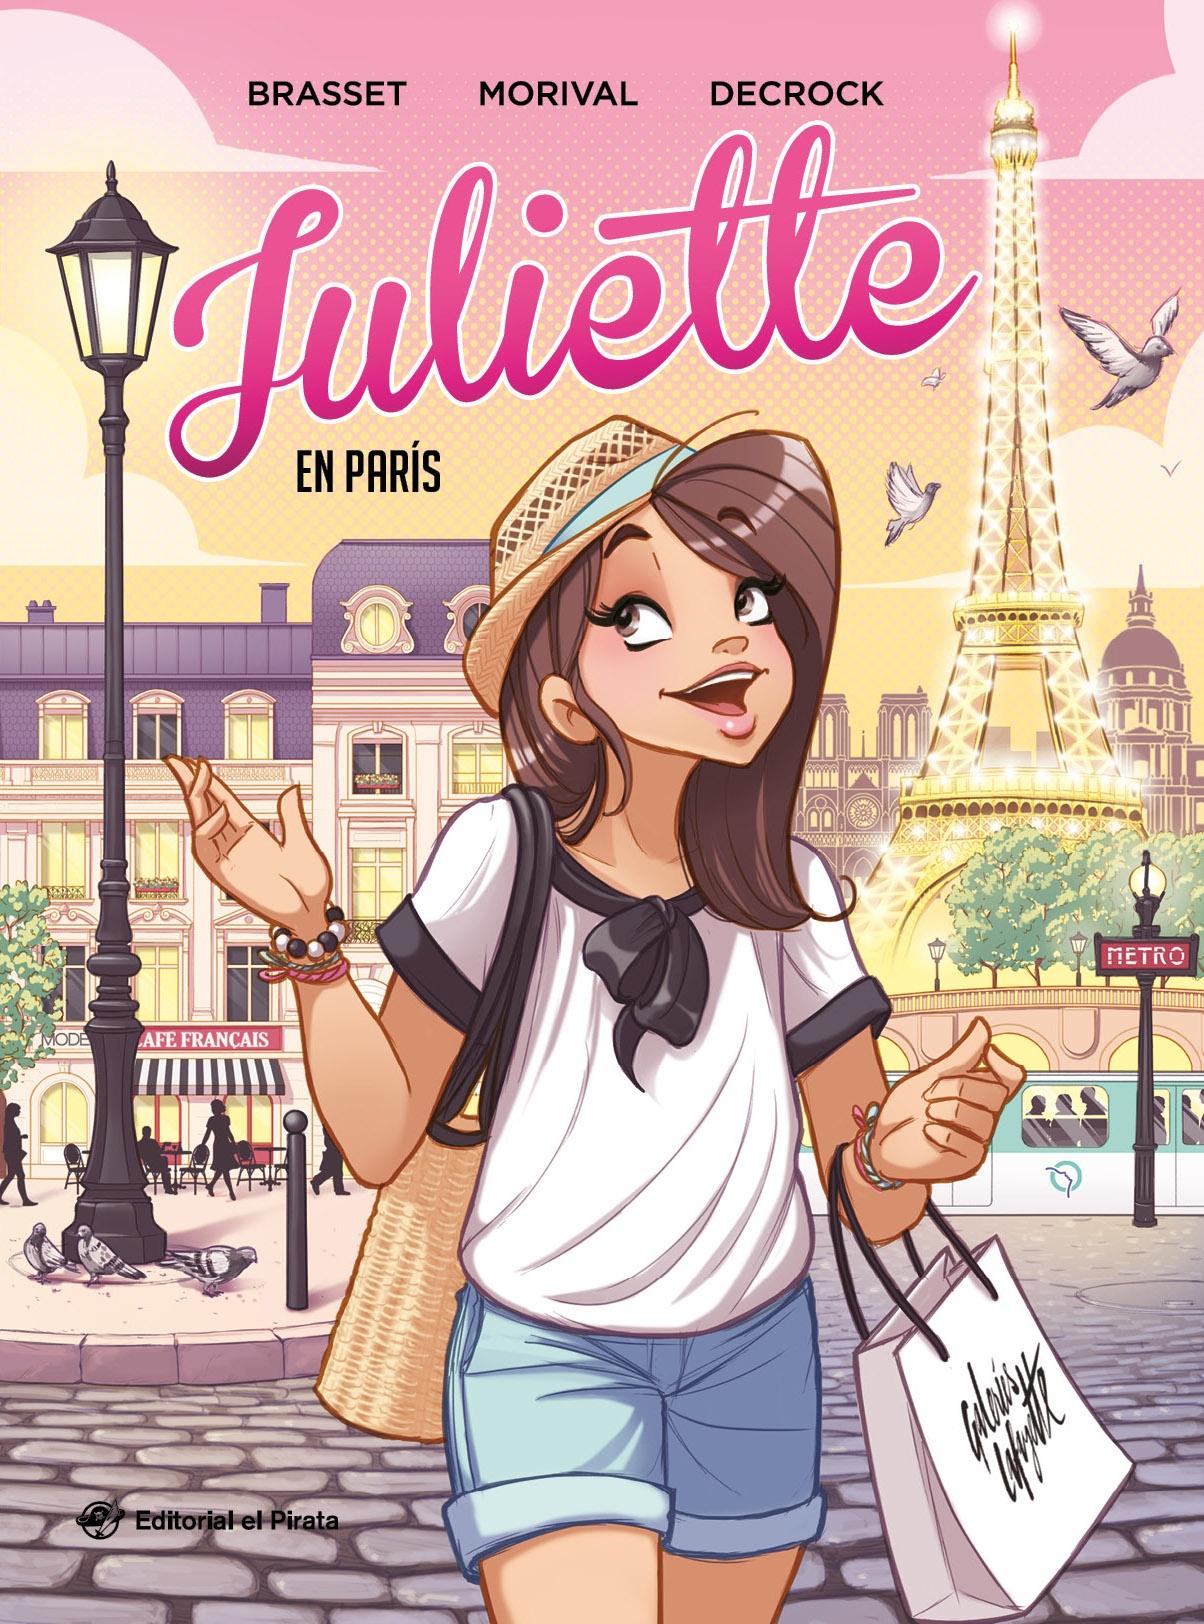 Juliette en París "Cómic Juvenil a Partir de 9 Años. ¡Descubre París con Juliette!"